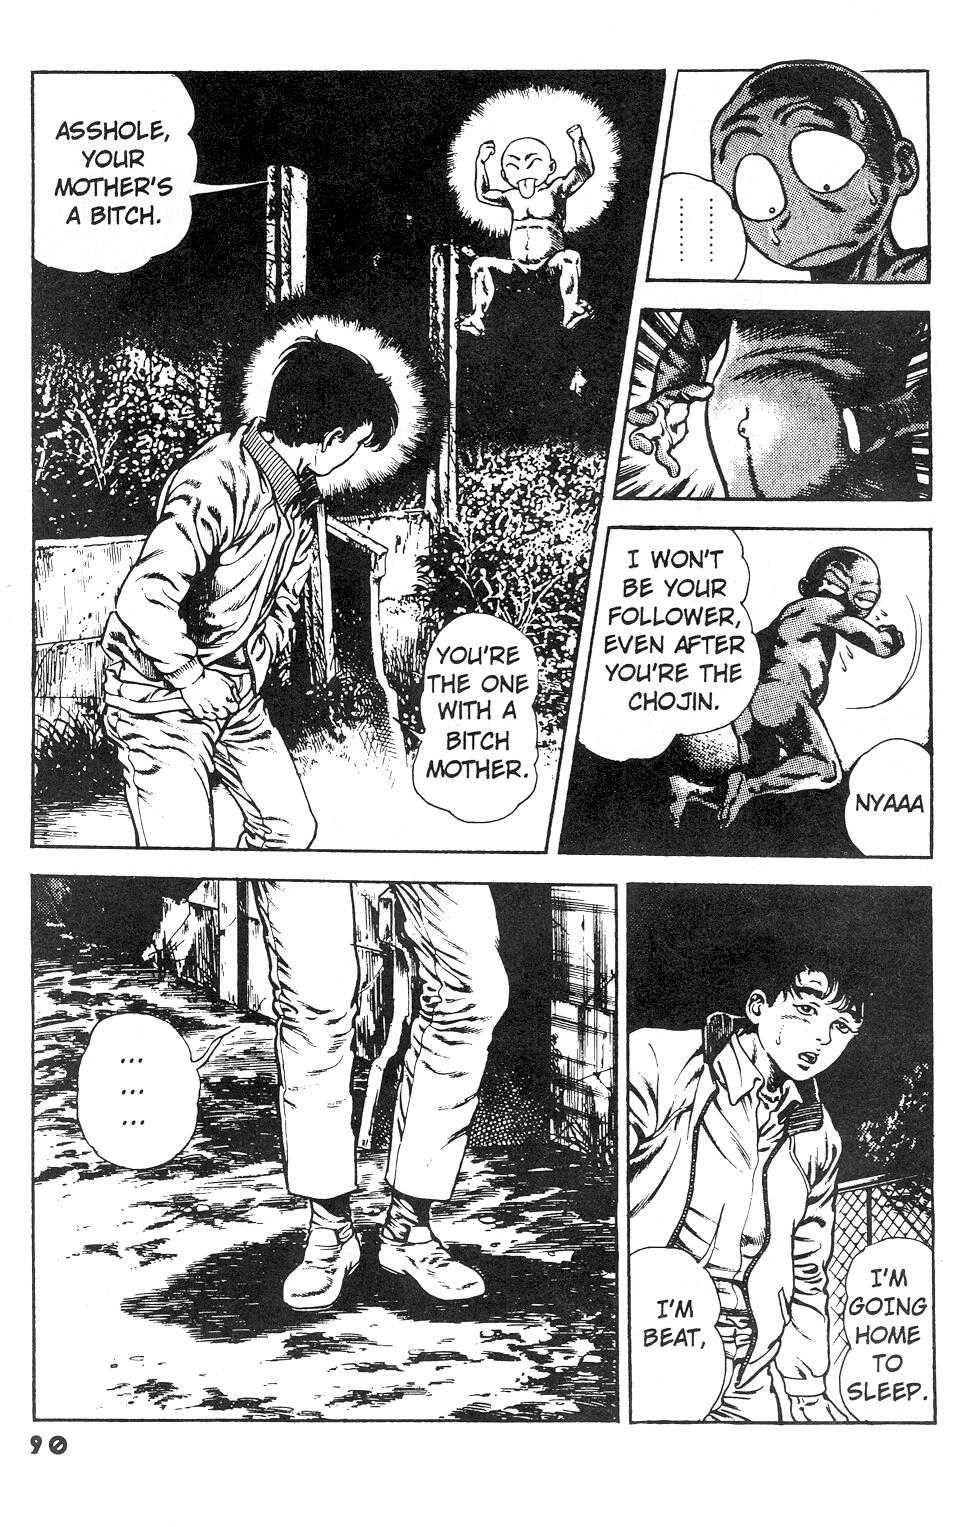 [Manga18][Toshio Maeda] Urotsukidoji - Return of the Overfiend No 3 (english) 